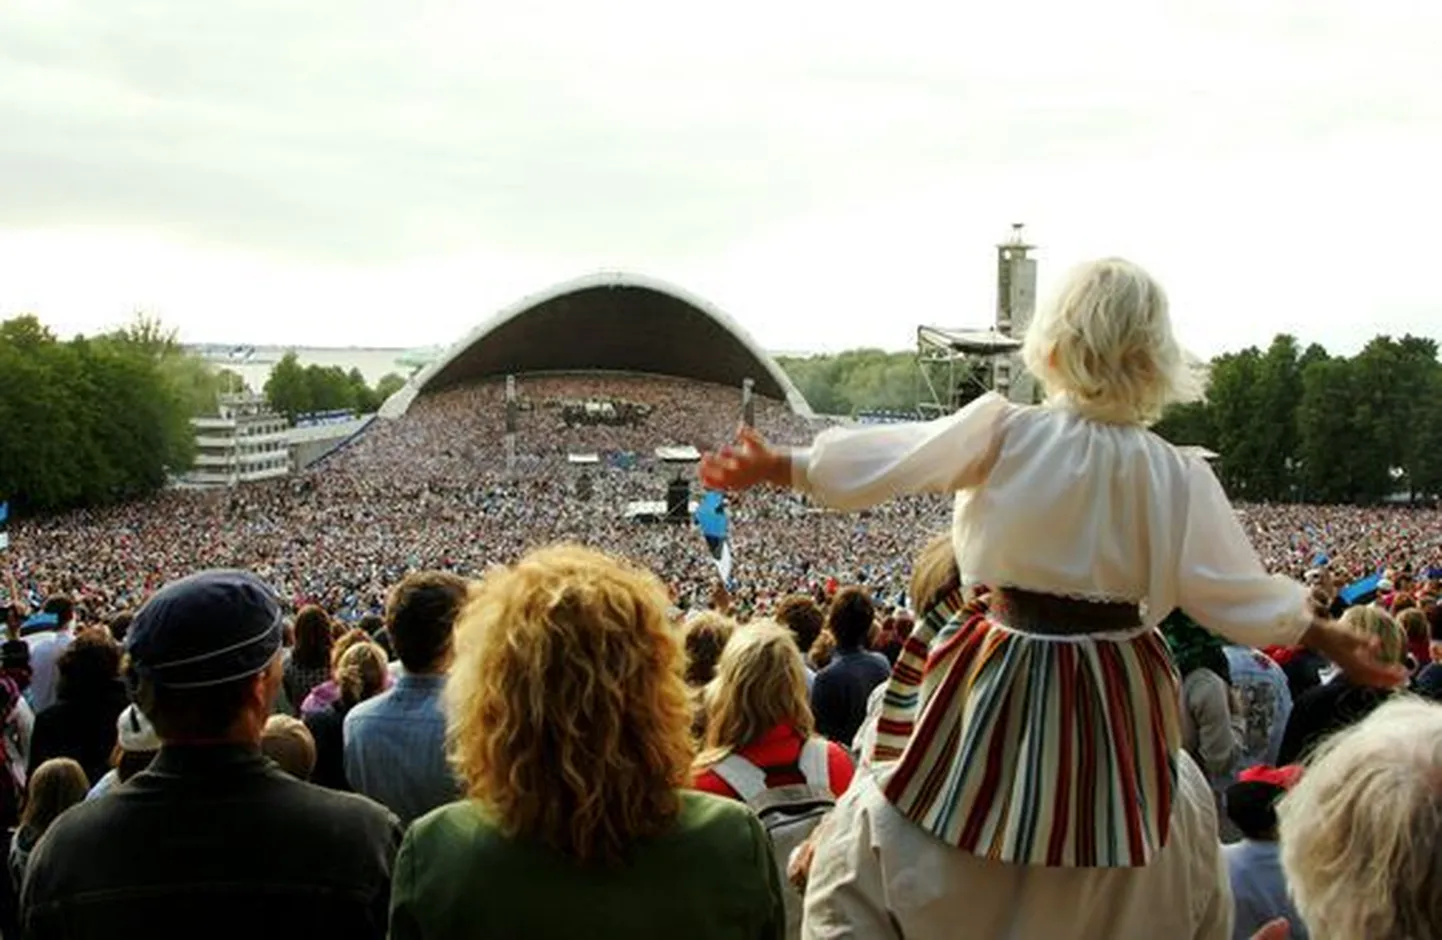 Laulupidu tõi Eestisse hulga välisturiste, kuid mulluse suvega võrreldes jäi siin peatunud turistide arv siiski kahvatumaks.